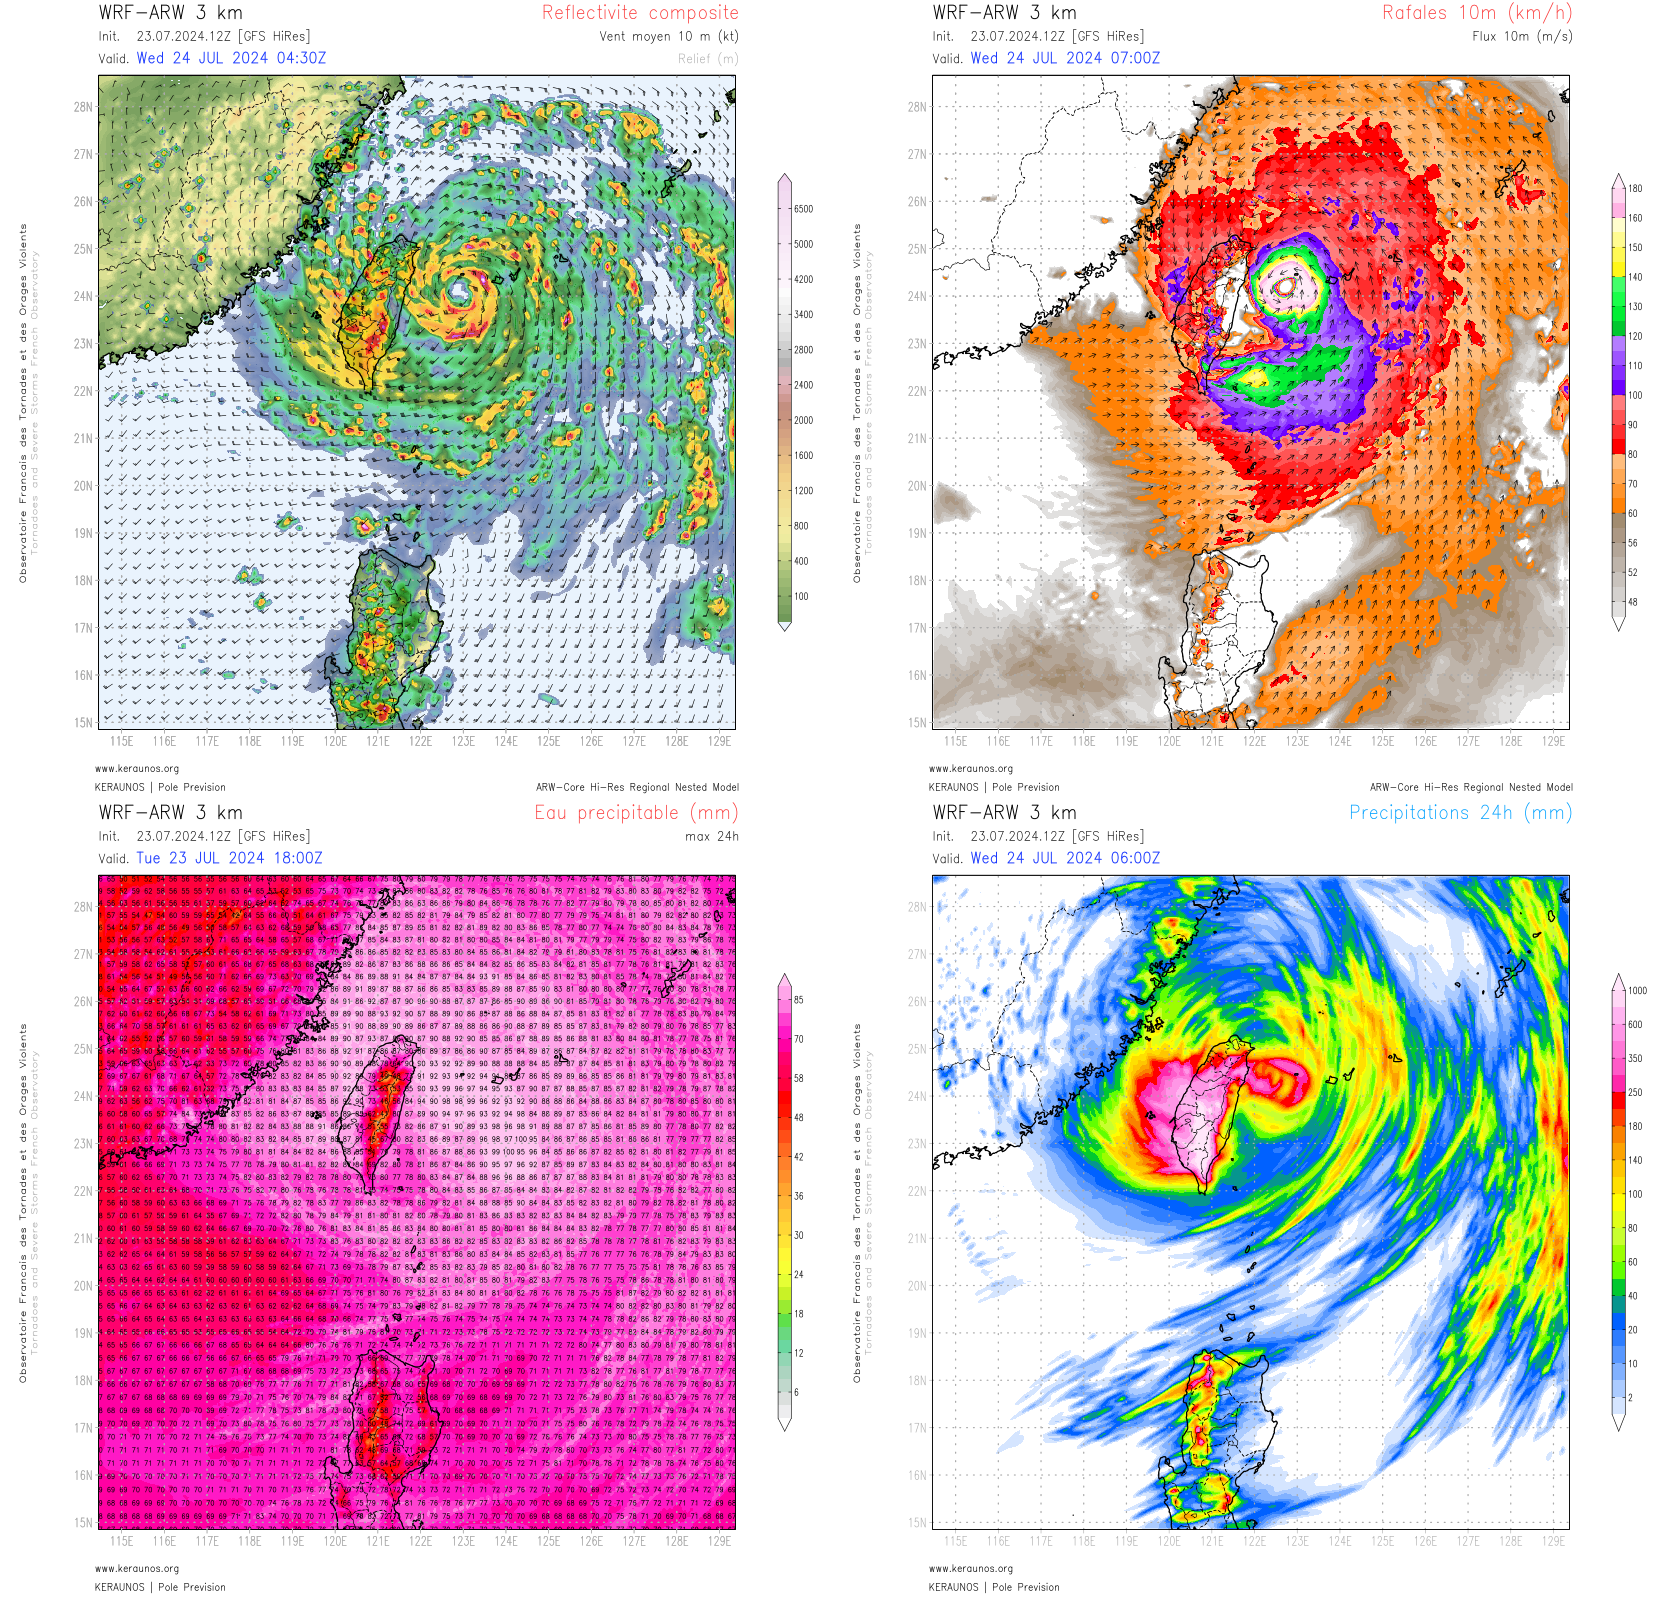 <p>Le puissant typhon Gaemi va heurter Taïwan de plein fouet demain. Le dernier run ARW 3 km suggère des rafales jusqu'à 200 km/h sur le nord-est de l'île. Les pluies associées s'annoncent extrêmes (> 1000 mm en 24h), favorisées par le transit lent du minimum dépressionnaire et des contenus en eau précipitable remarquables (jusqu'à 100 mm !).</p>